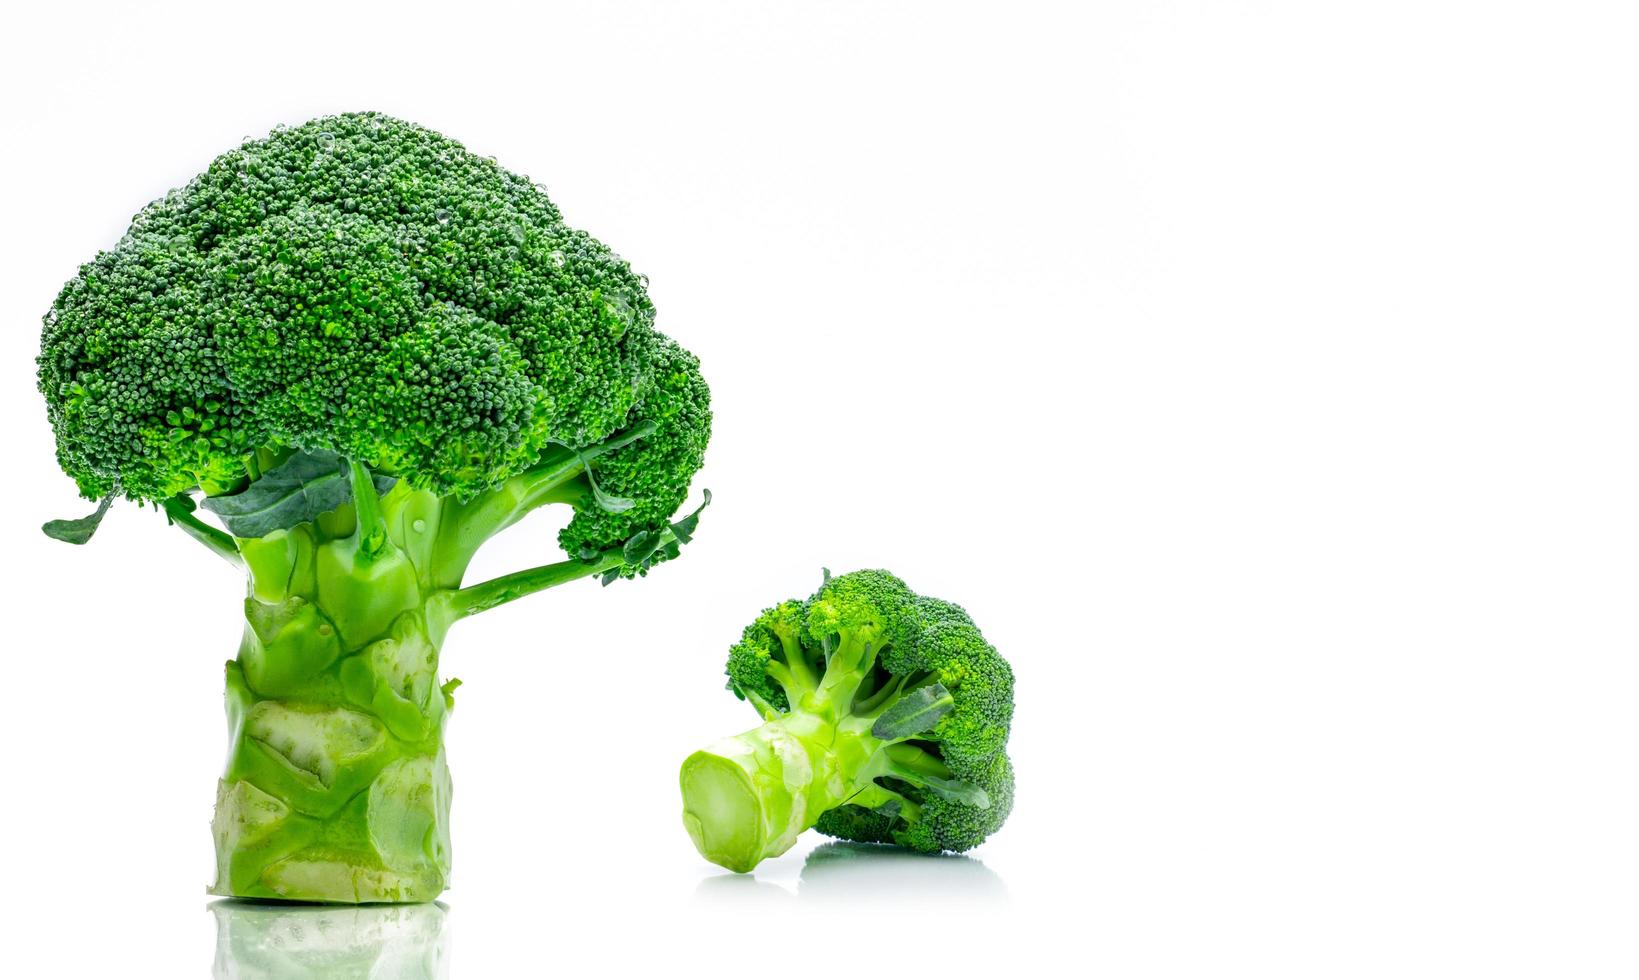 uppsättning grön broccoli brassica oleracea. grönsaker naturlig källa till betakaroten, vitamin c, vitamin k, fiber mat, folat. färsk broccoli kål isolerad på vit bakgrund. foto